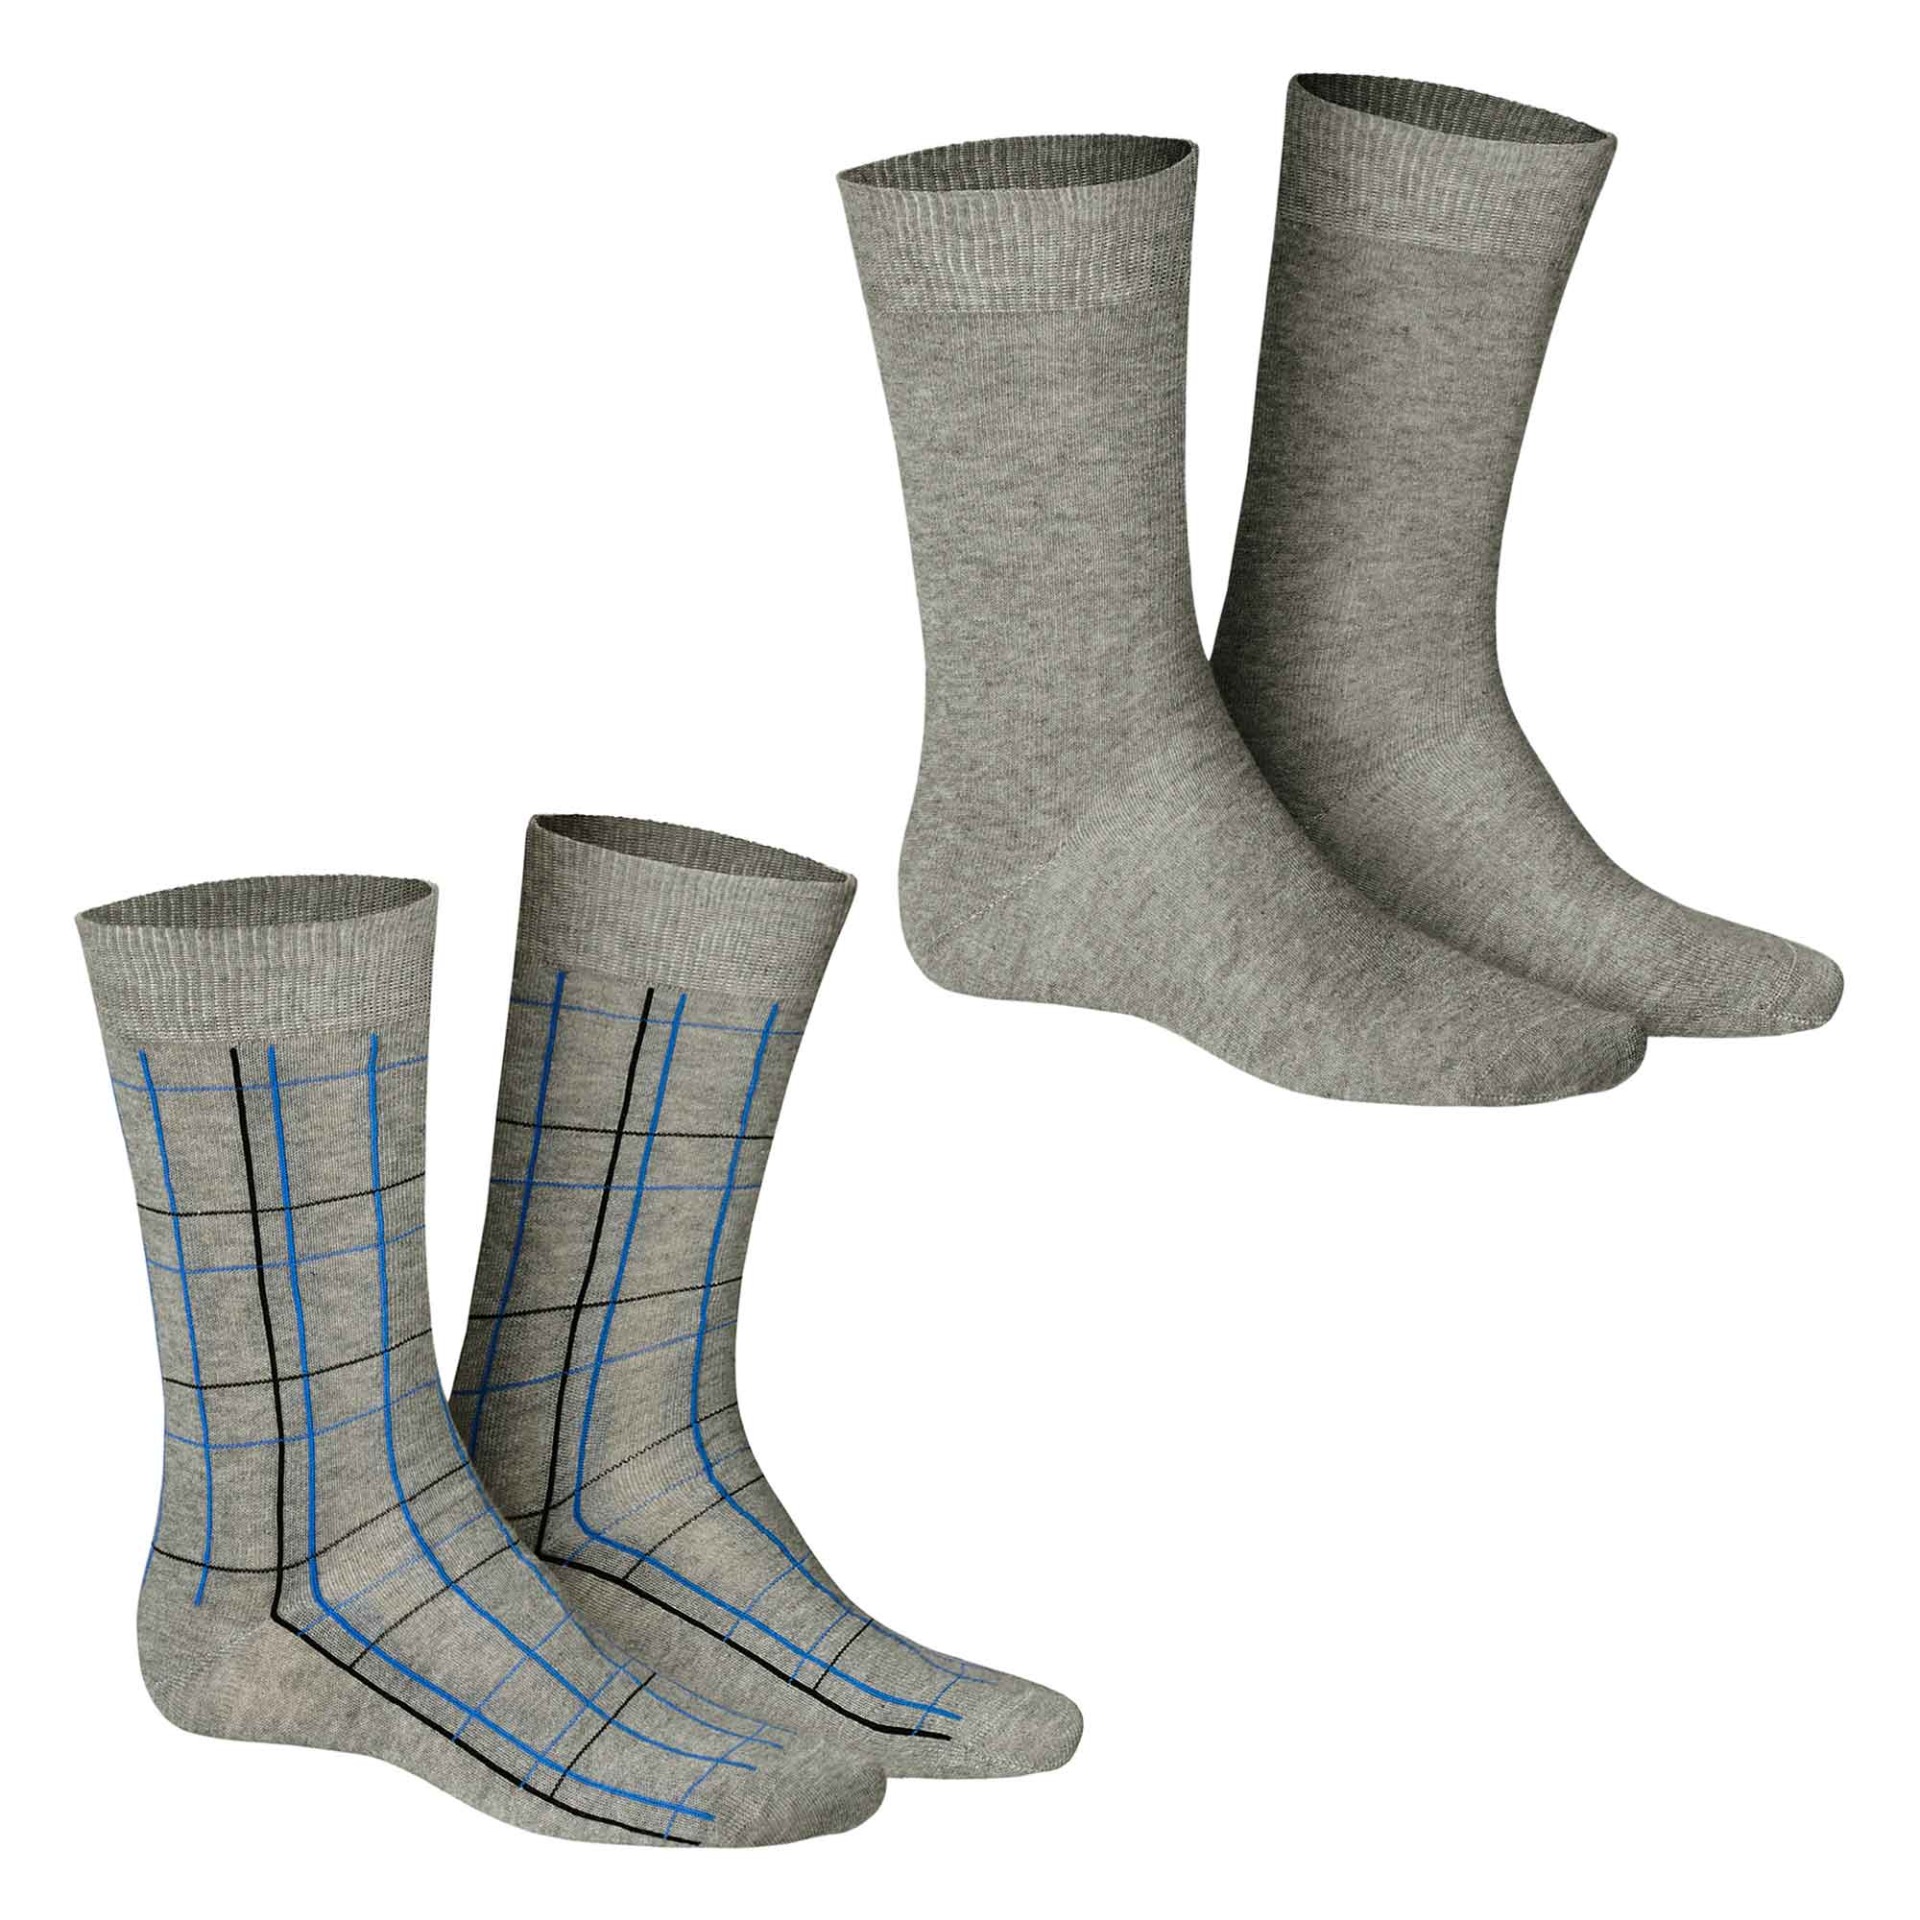 HUDSON Herren TRAFFIC 2-PACK -  43/46 - Klassische Socken im praktischen Doppelpack - Silber (Grau)